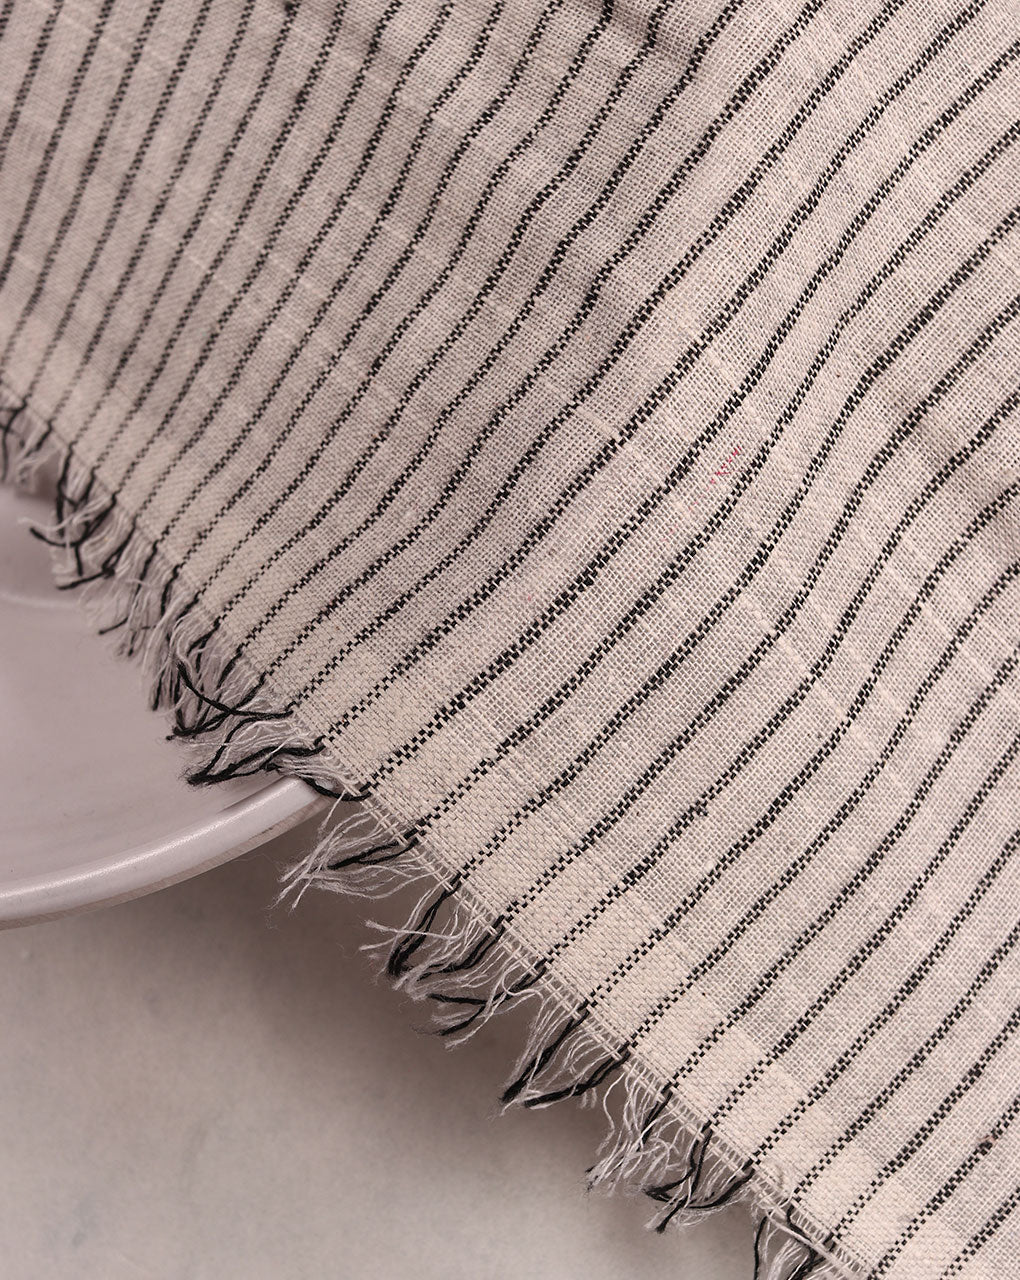 White Stripes Cotton Fabric